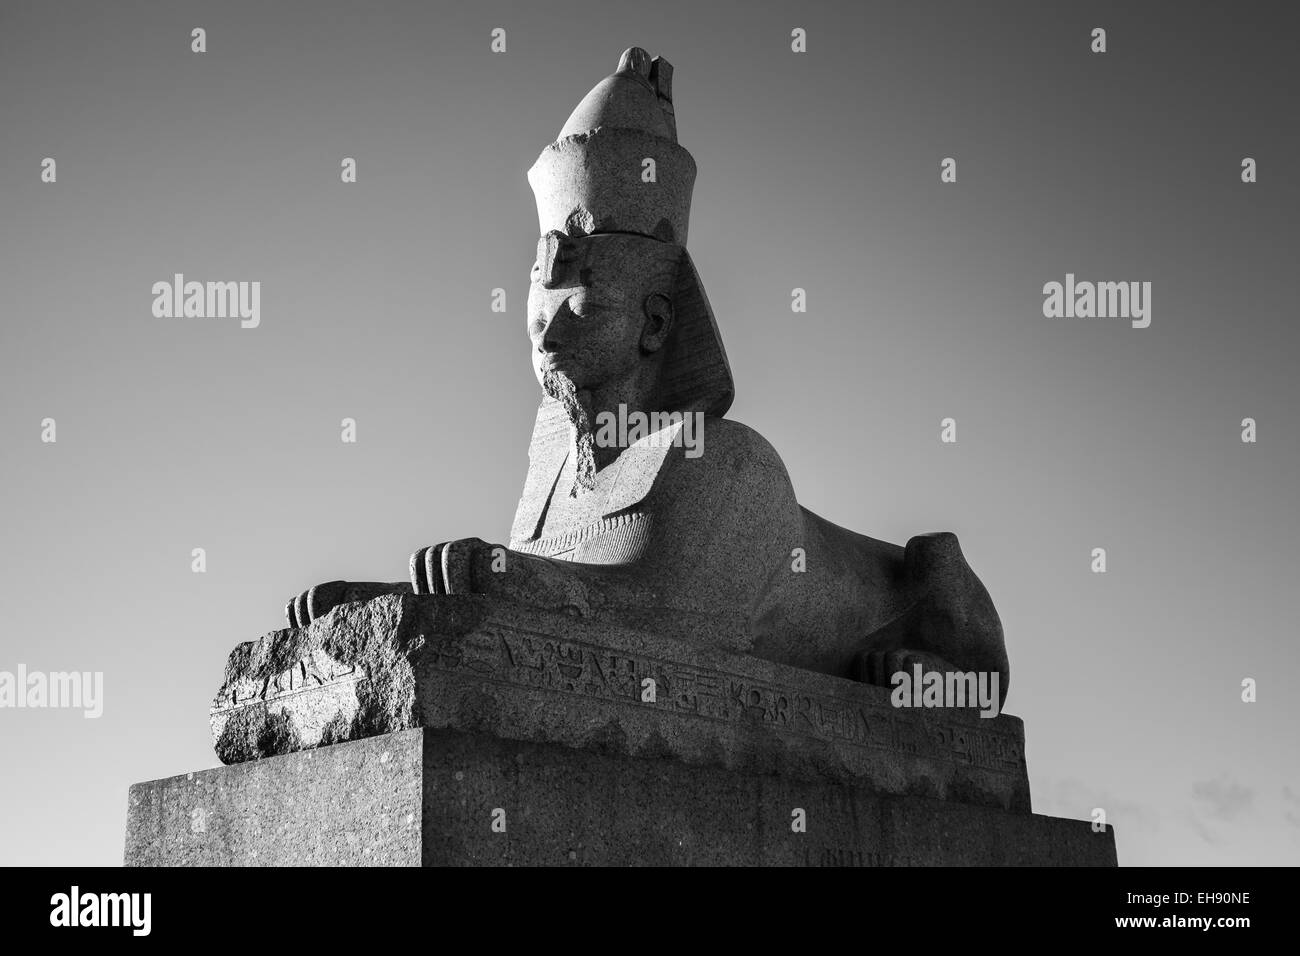 Sphinx de granit. Photo en noir et blanc du monument antique. Vue de la côte de la rivière Neva, à Saint-Pétersbourg, Russie Banque D'Images